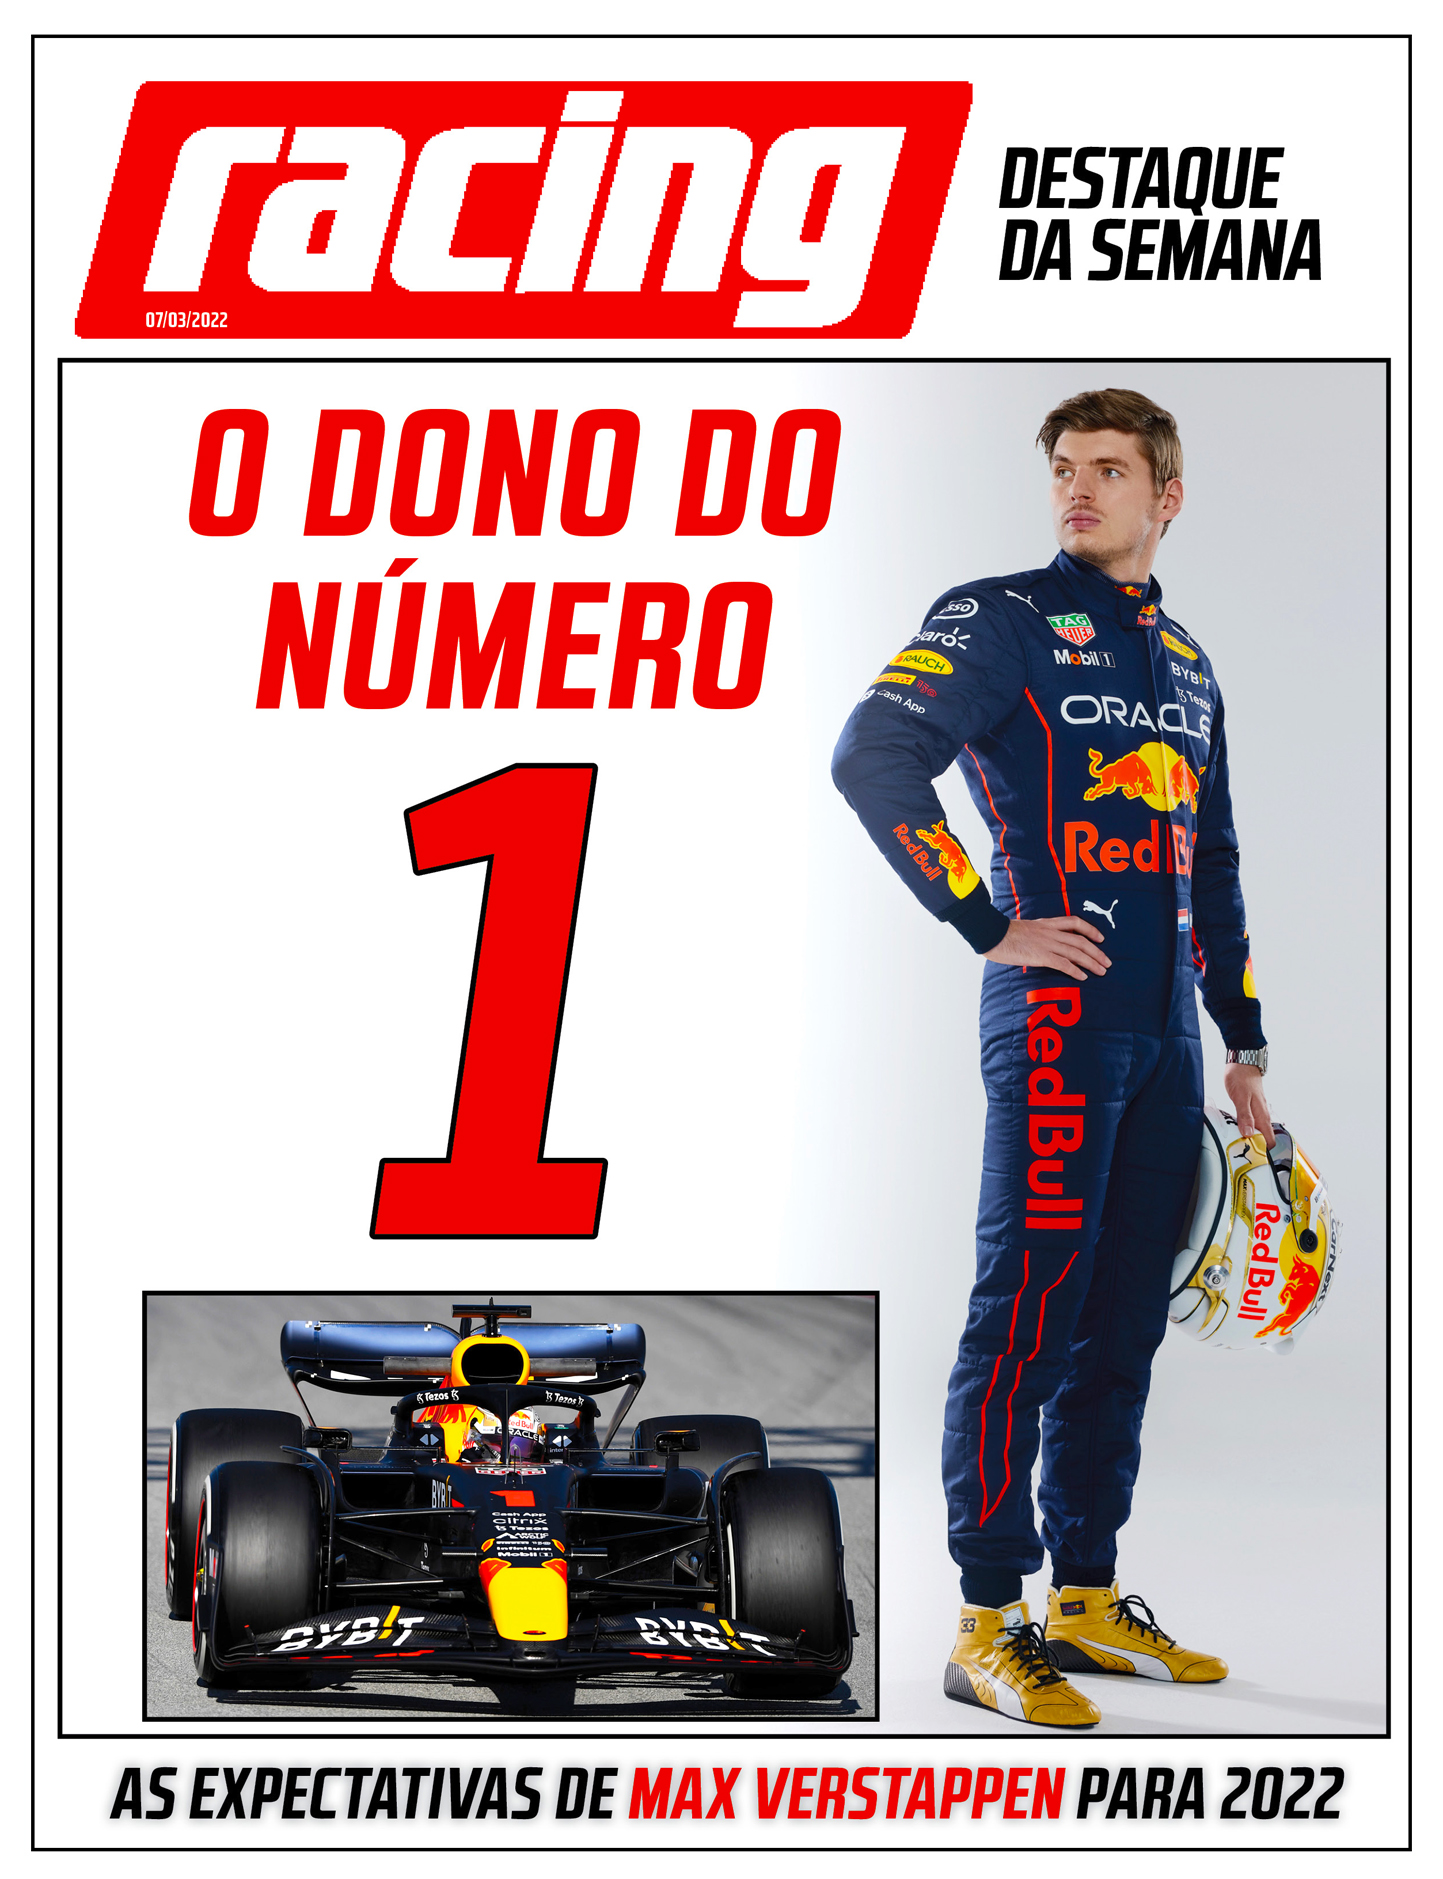 Capa Destaque da Semana RACING - Max Verstappen Número 1